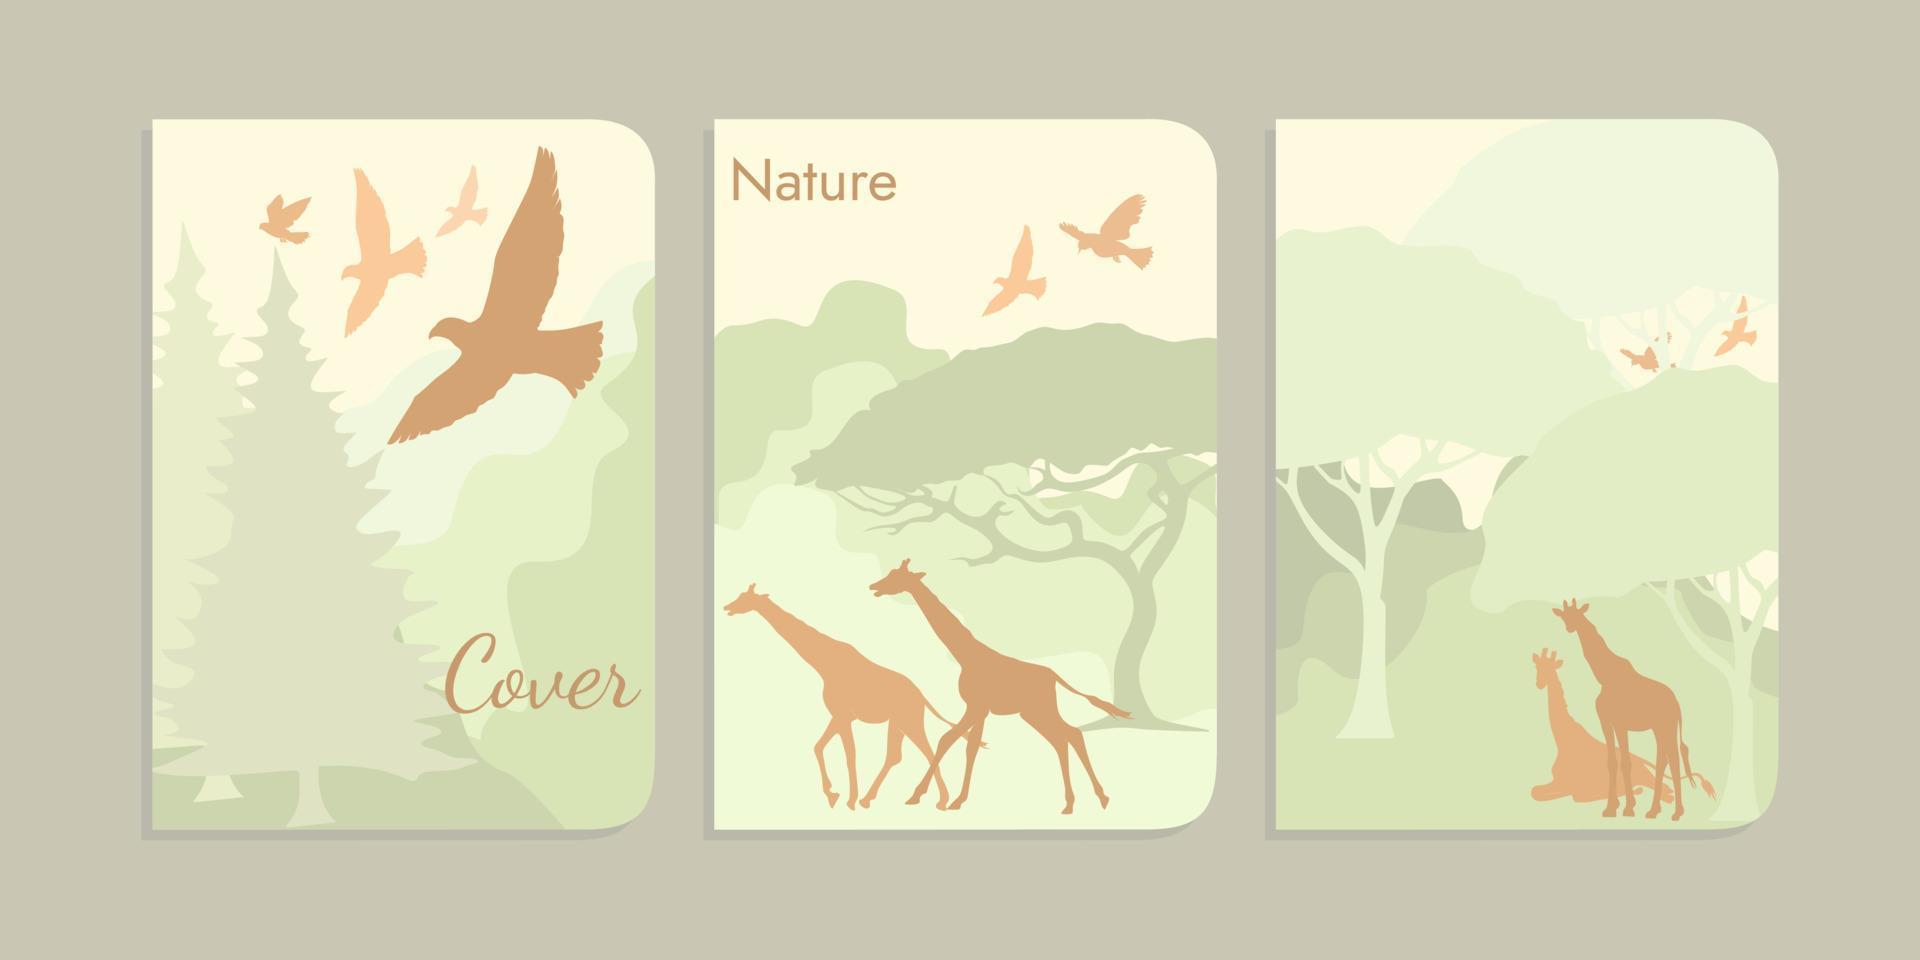 oerwoud illustratie omslag. boom achtergrond, giraffe, vogel. a4 grootte kinderen boek omslag. Woud landschap illustratie vector